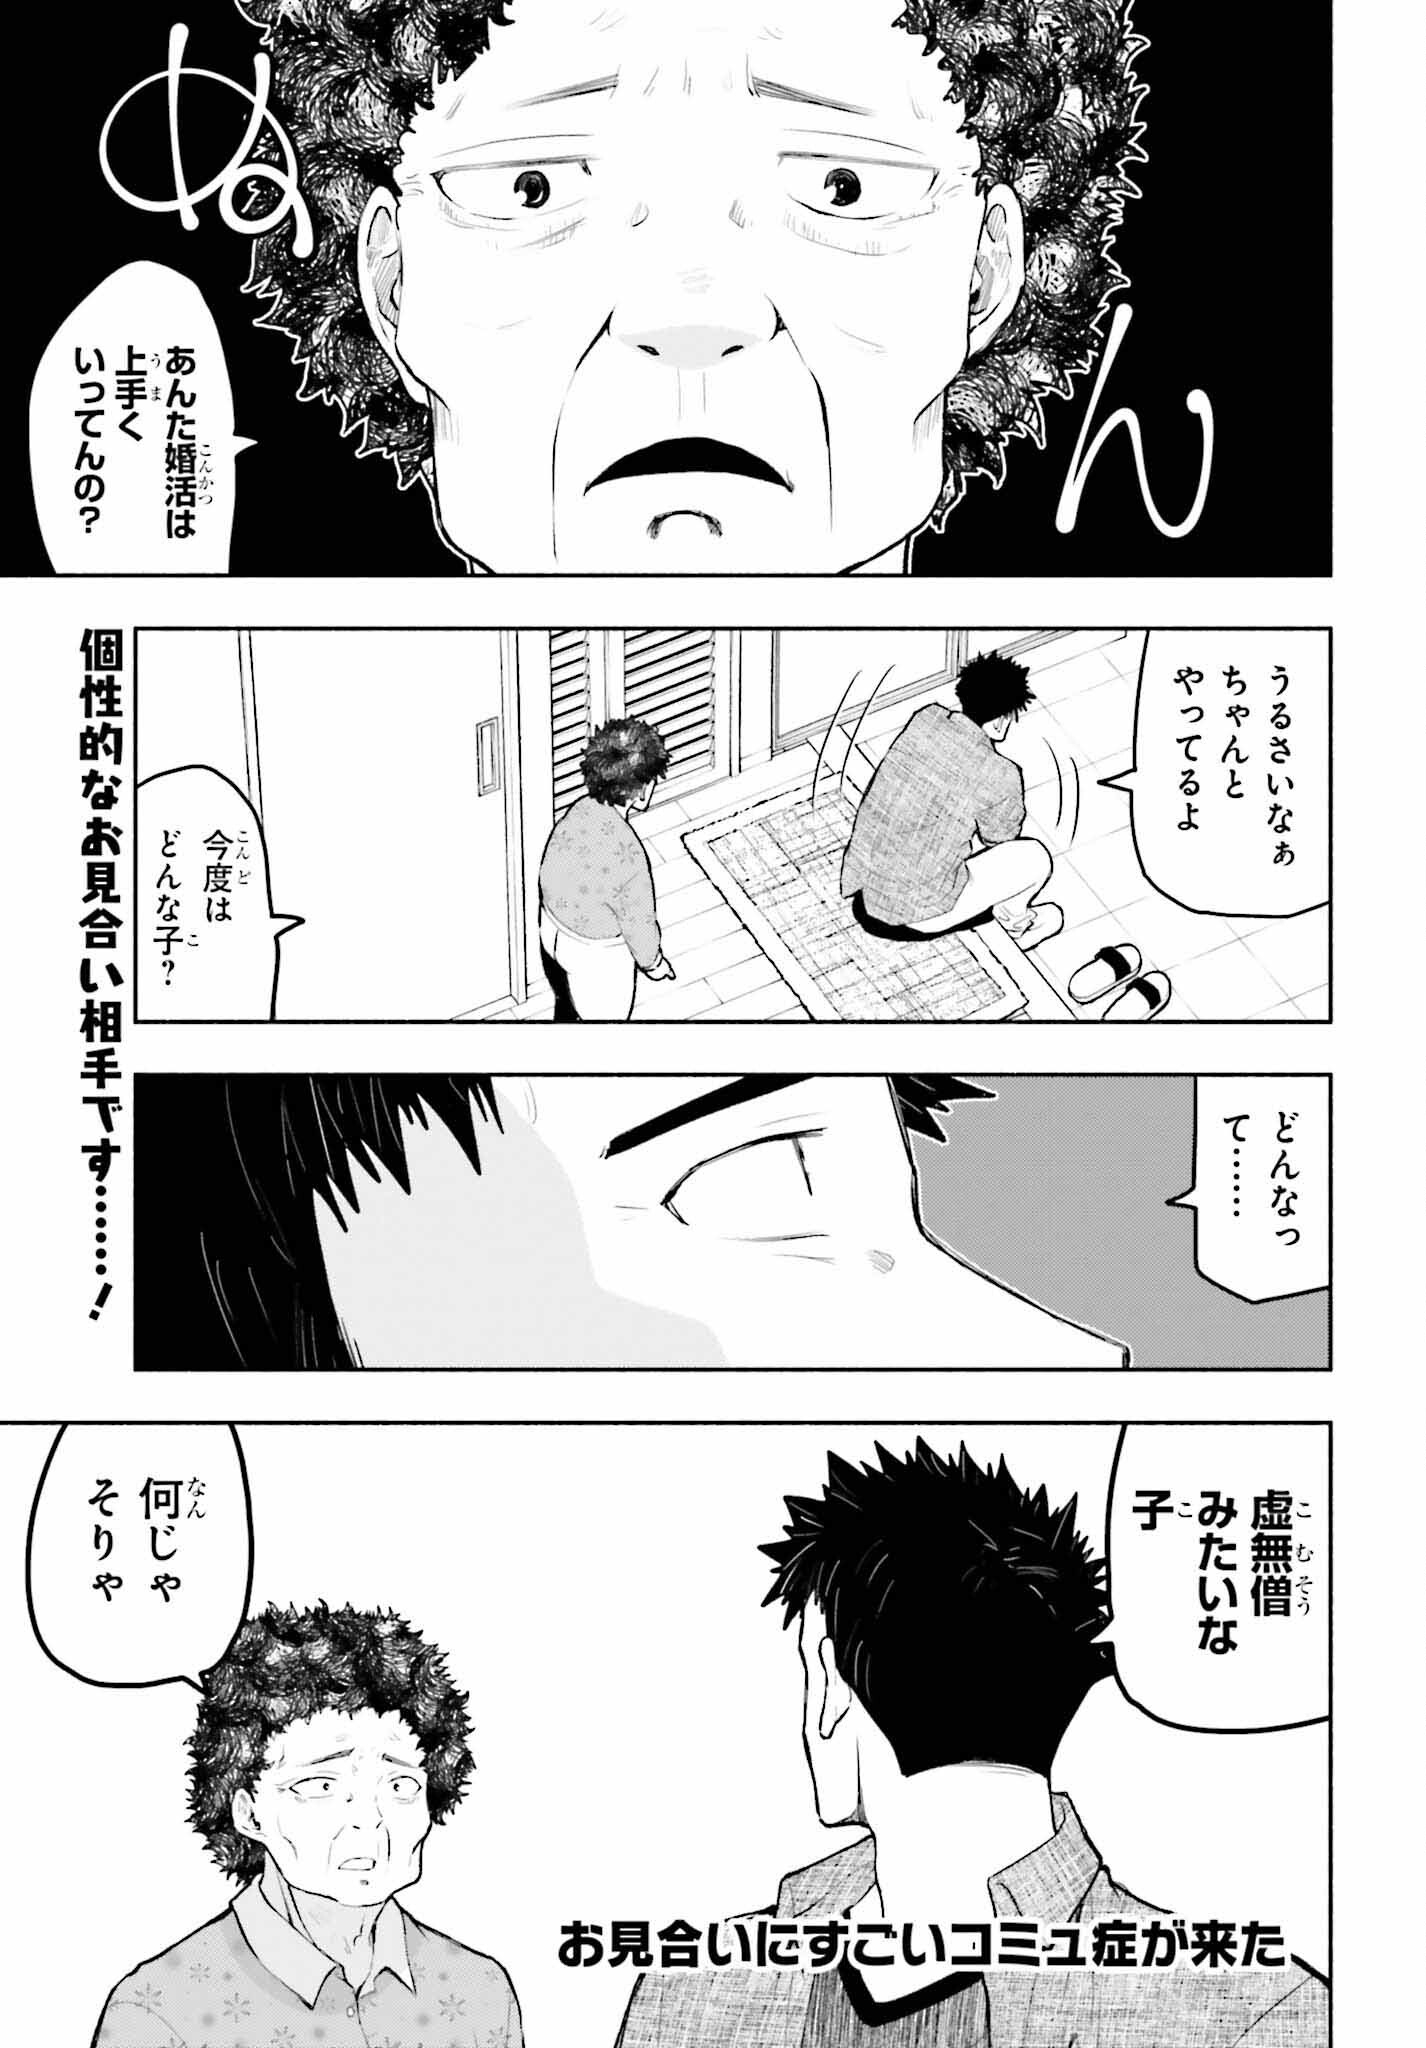 Omiai ni Sugoi Komyushou ga Kita - Chapter 4 - Page 1